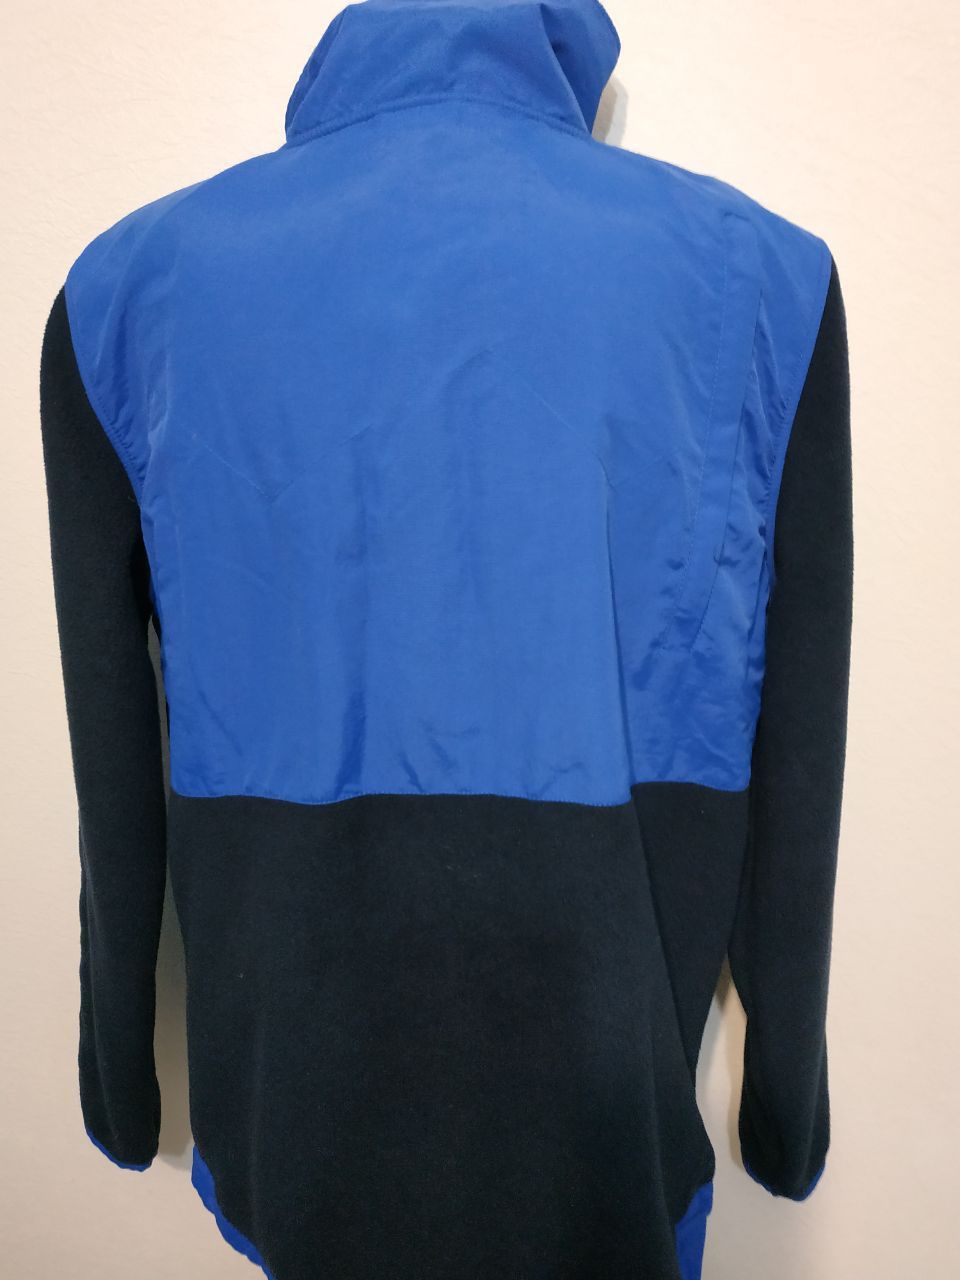 Флісова куртка, кофта Alprausch (Швейцарія) розм. М